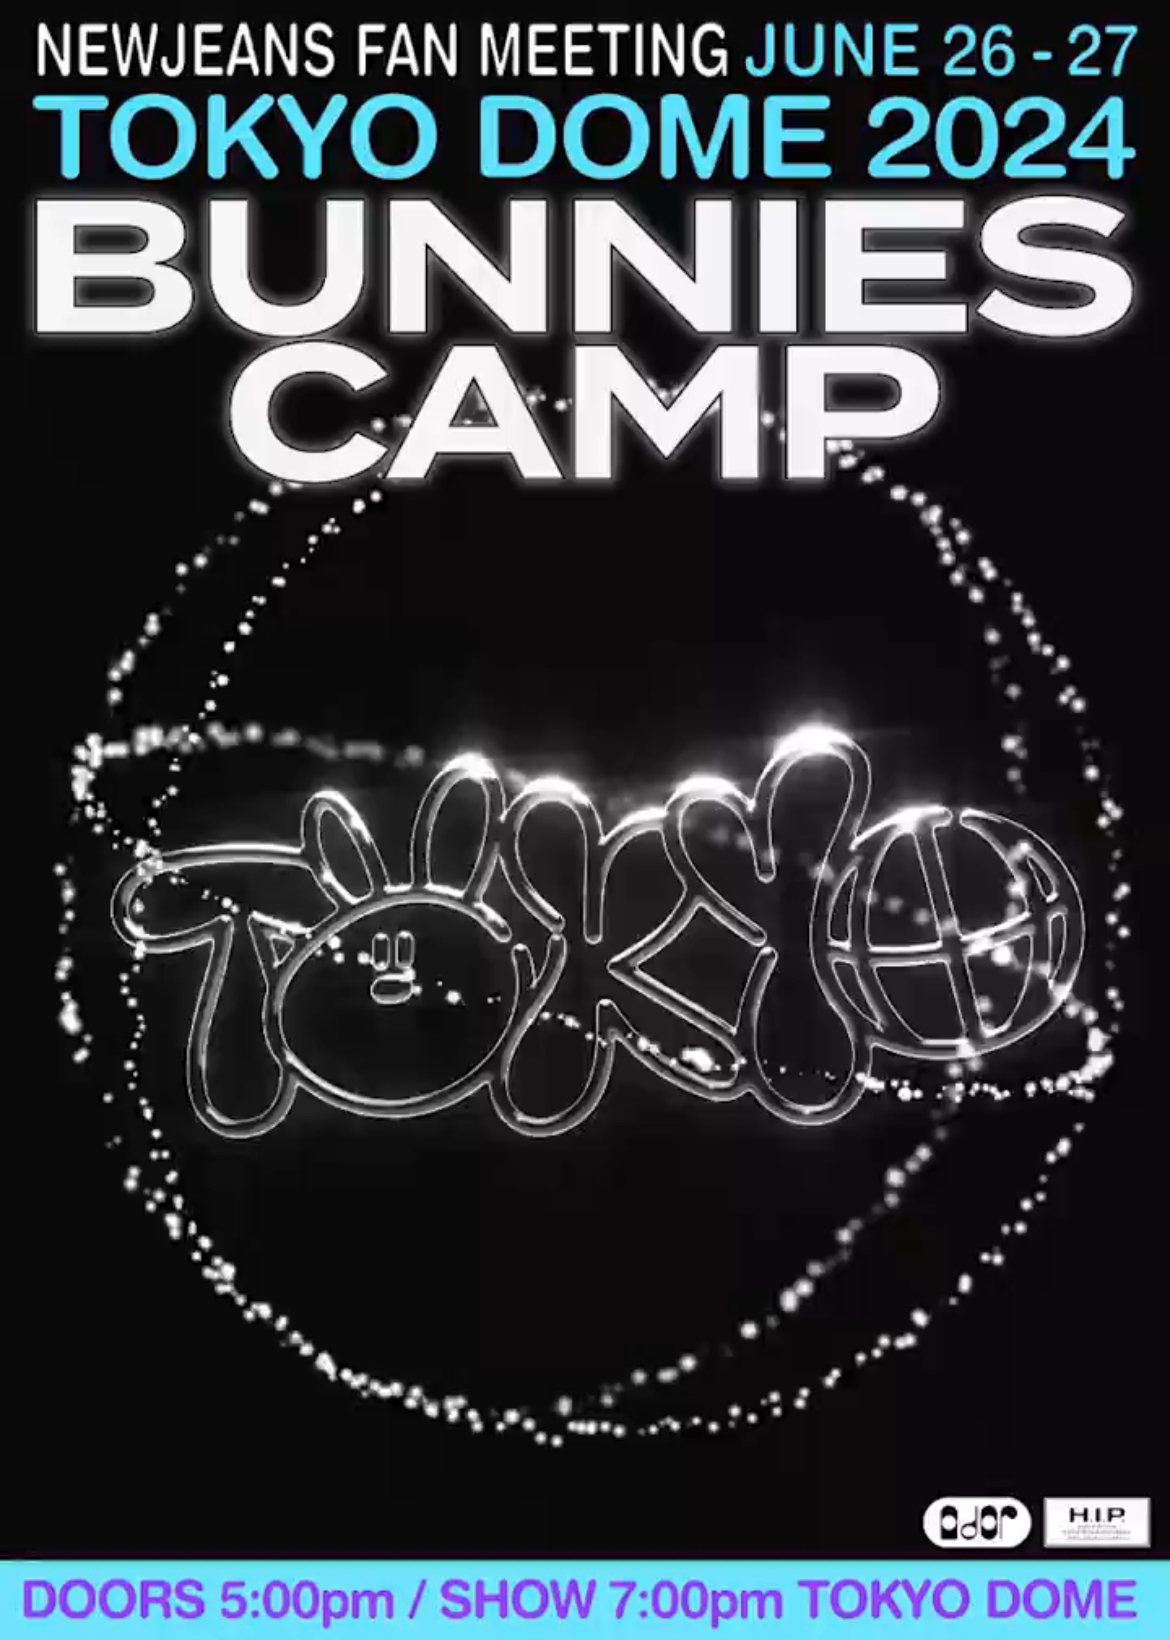 [정보/소식] 뉴진스 일본 데뷔 팬미팅 【BUNNIES CAMP 2024 TOKYO DOME】 공식 포스터 | 인스티즈